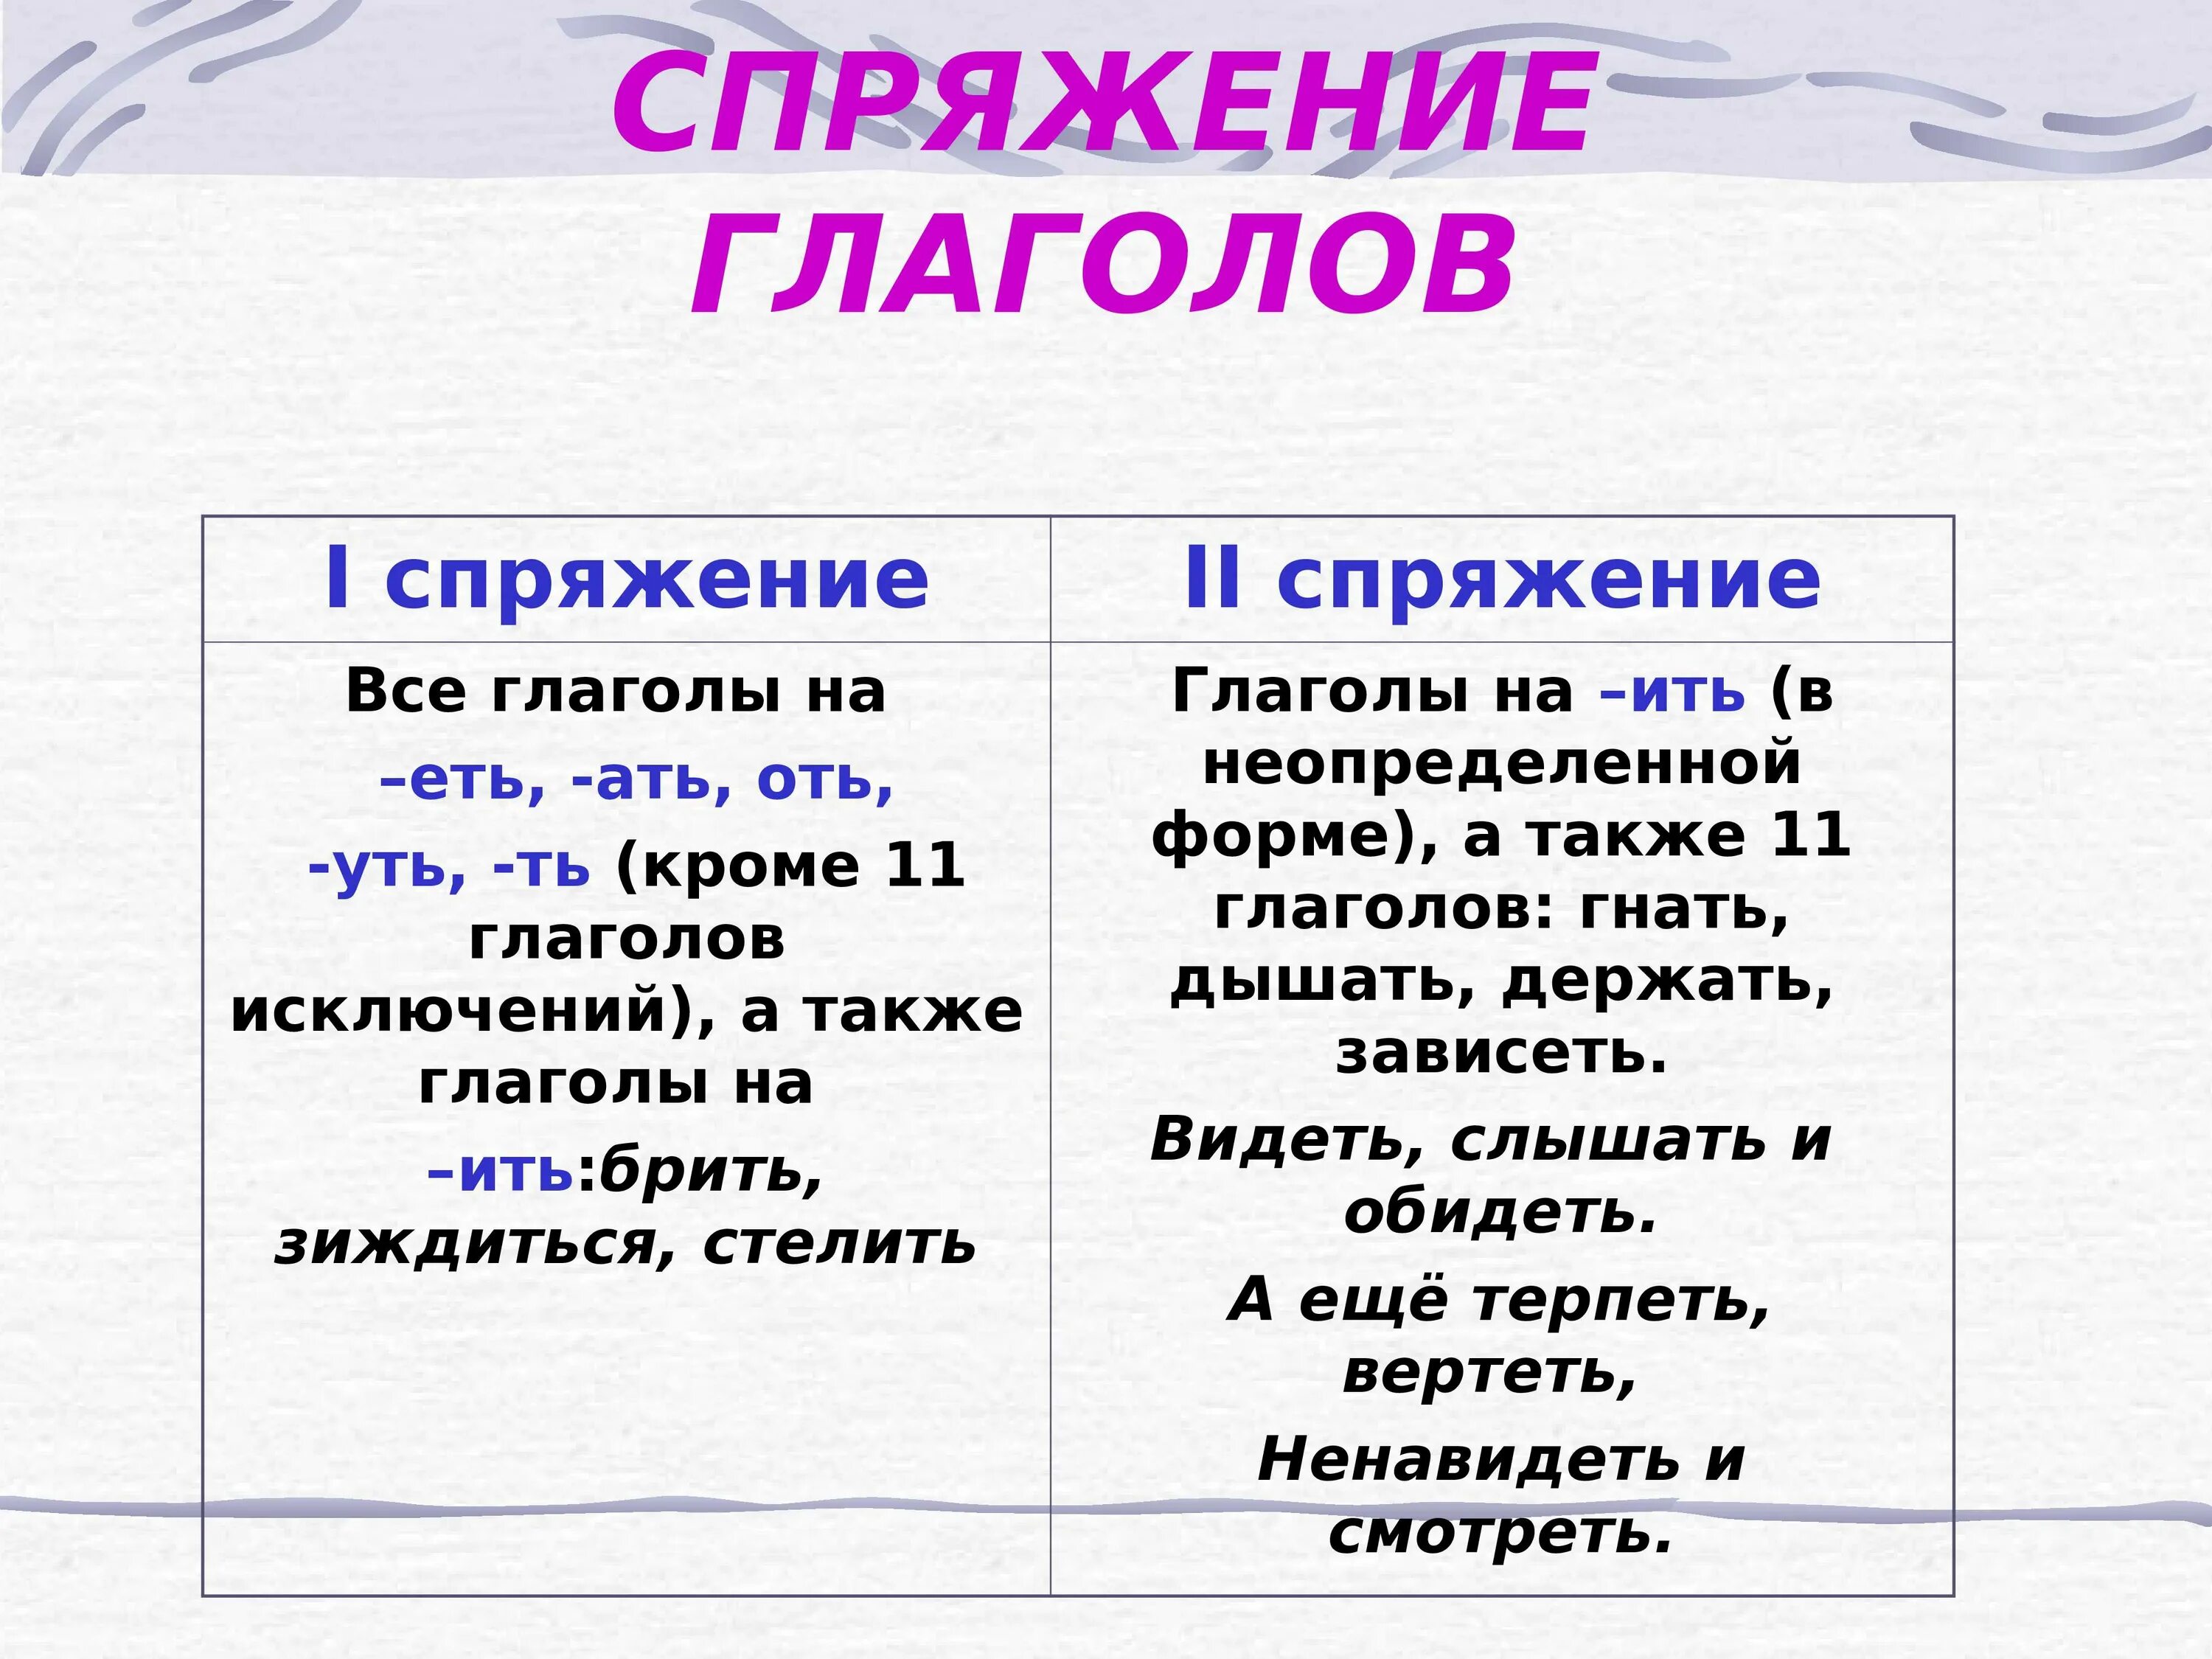 Борятся какое спряжение. Как понять спряжение глаголов в русском языке 4 класс таблица. Как понять спряжение глаголов 6 класс. Спряжение глаголов правило таблица. Как понять спряжение глаголов в русском языке 4 класс.